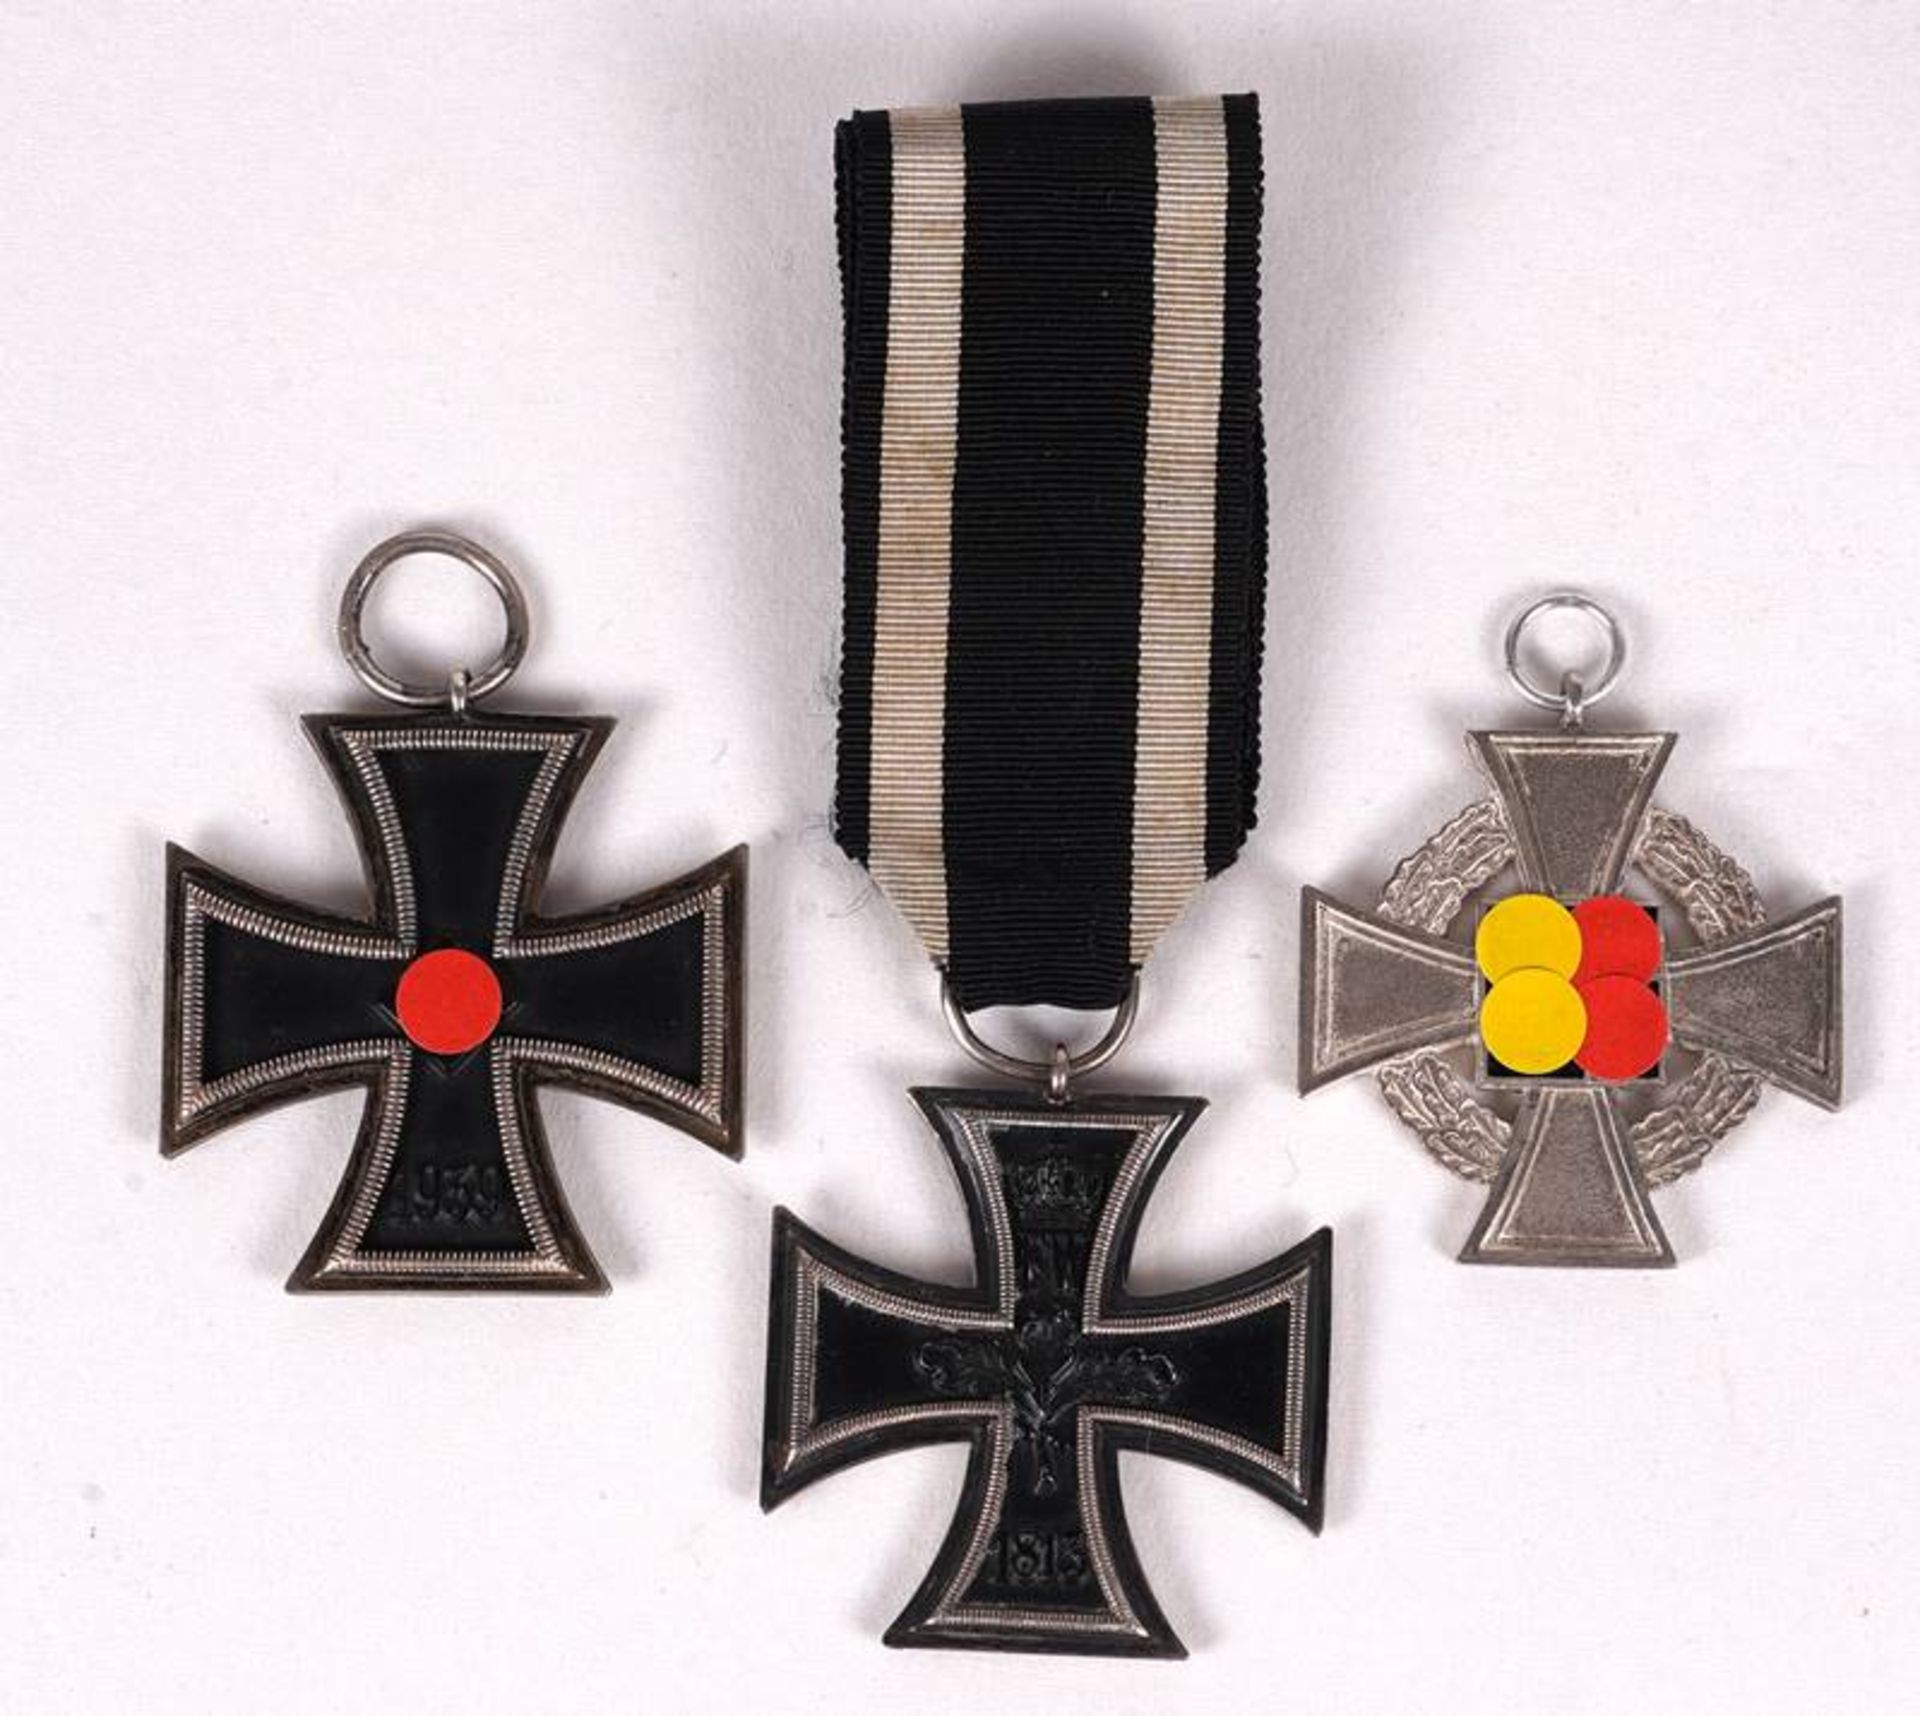 3 x Iron Cross